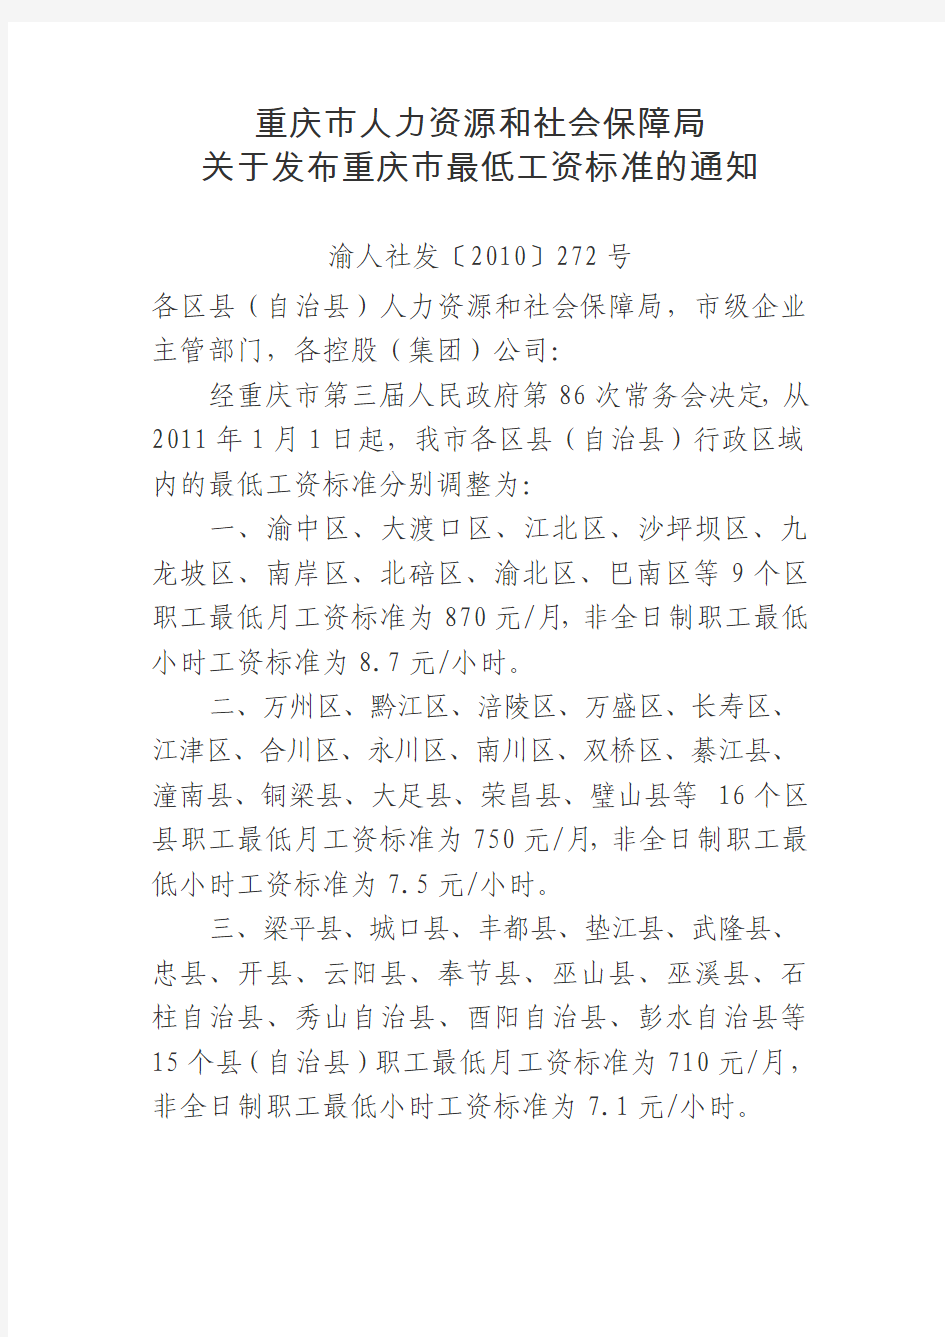 重庆市人力资源和社会保障局关于发布重庆市最低工资标准的通知(渝人社发[2010]272号